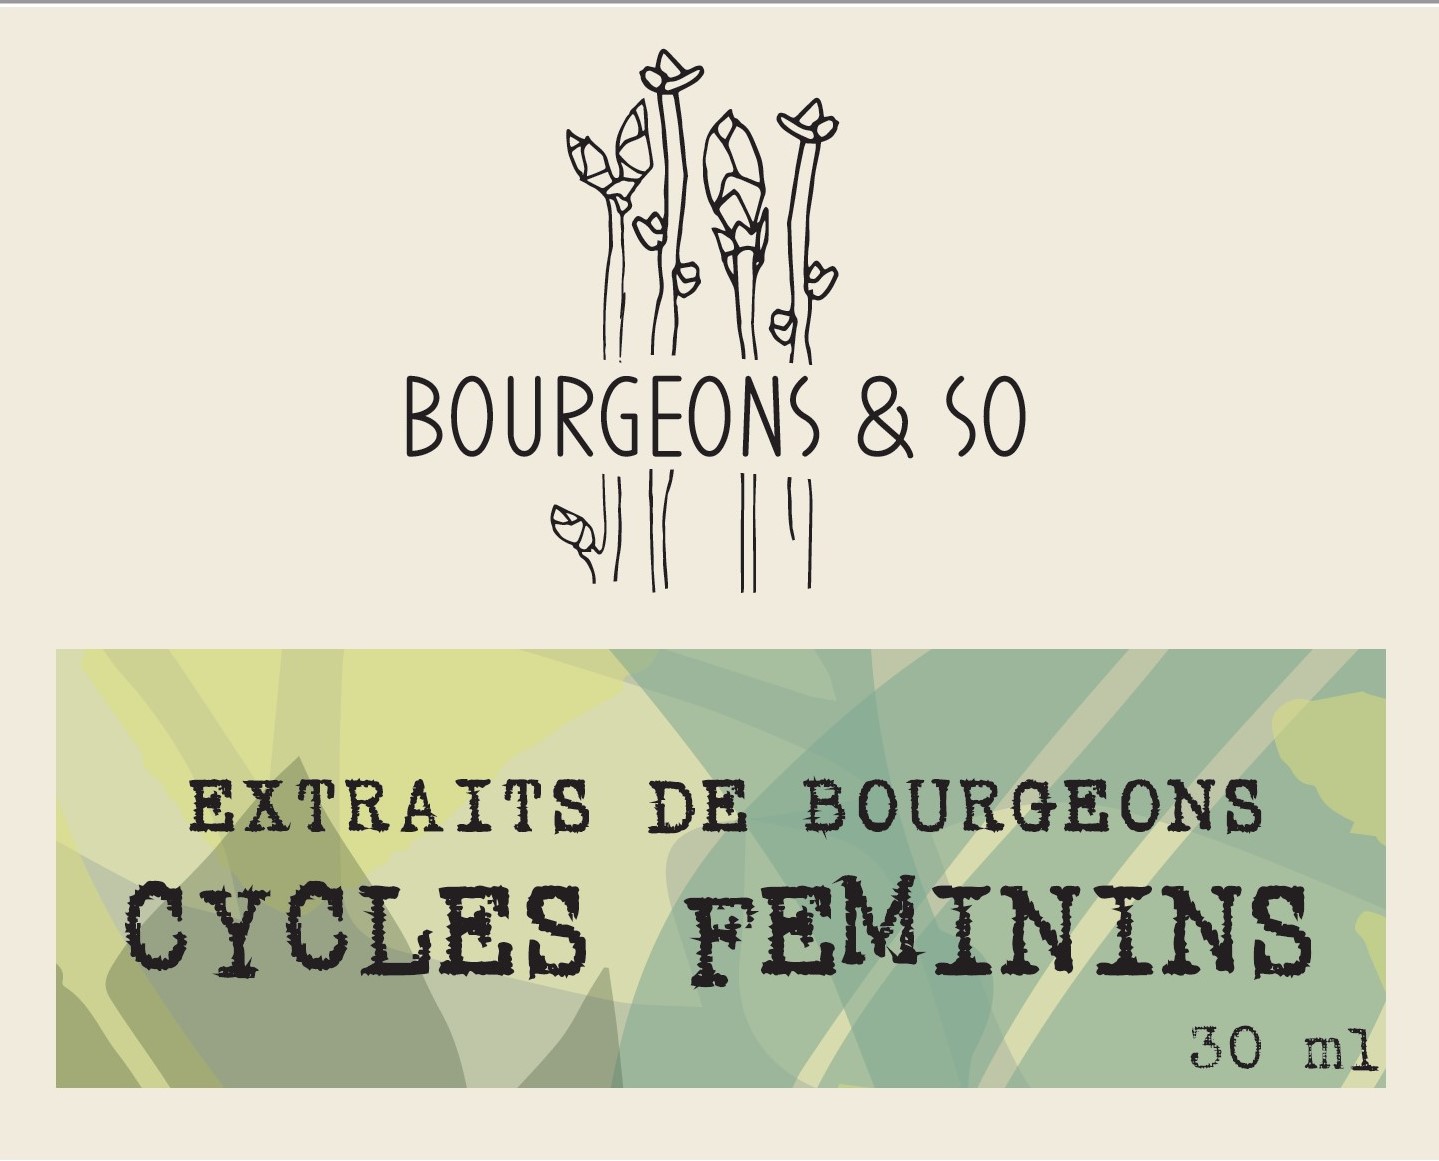 CYCLES FEMININS